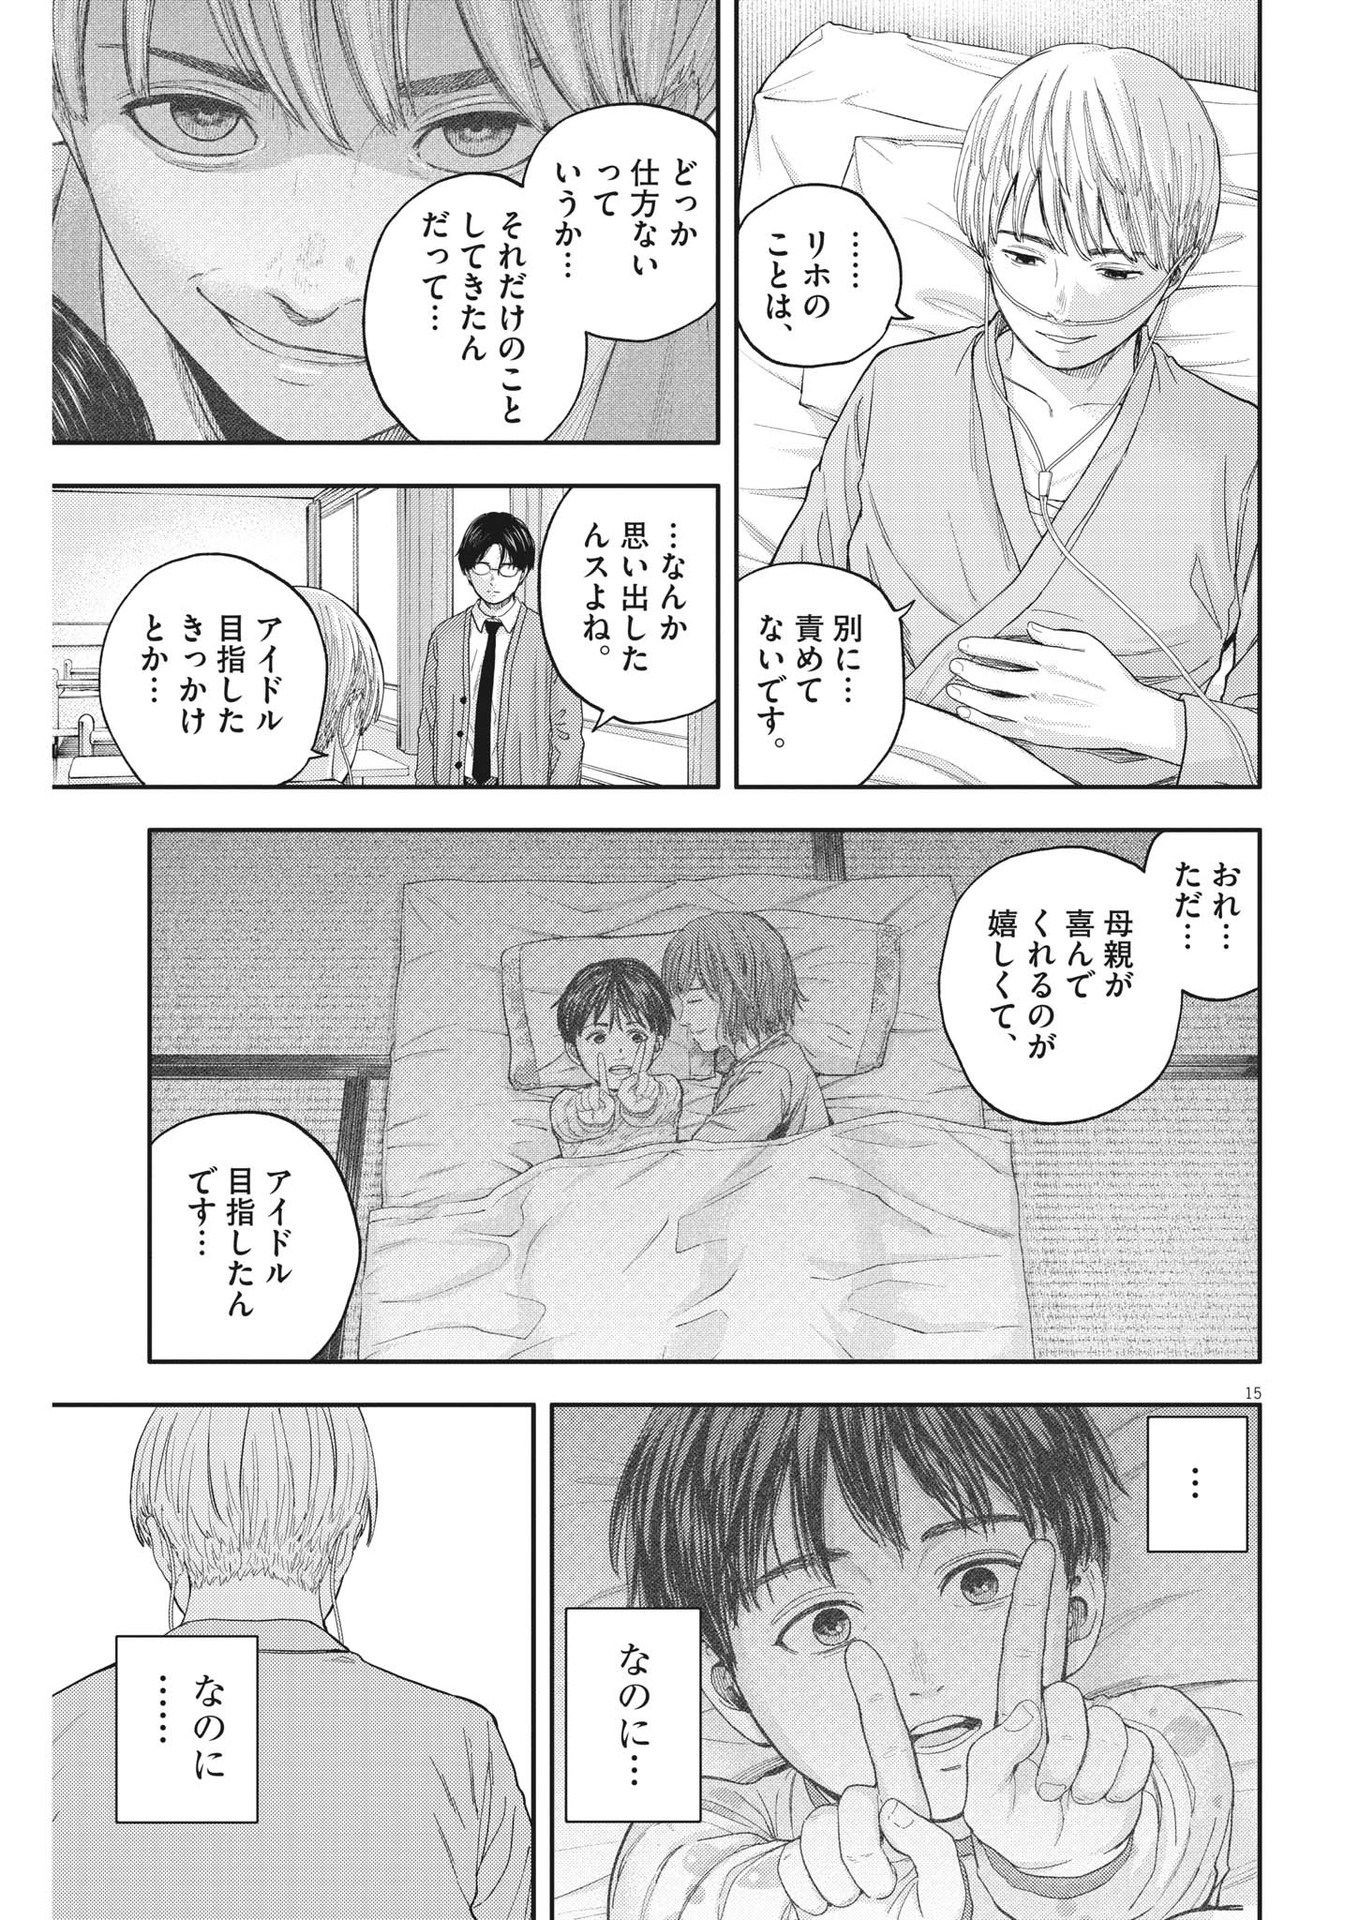 Yumenashi-sensei no Shinroshidou - Chapter 17 - Page 15